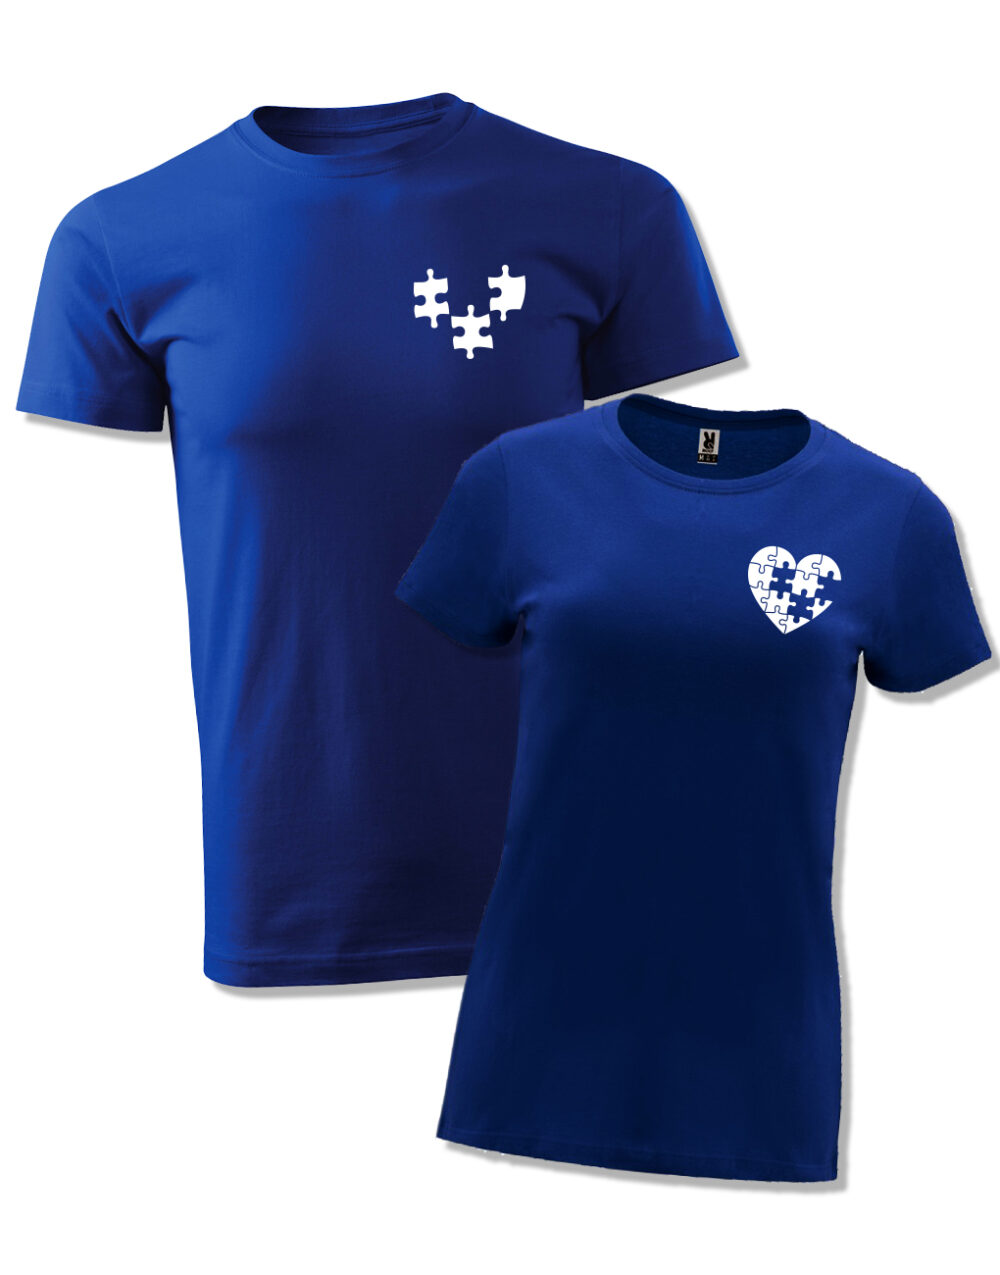 Párová trička s potiskem Puzzle královská modrá